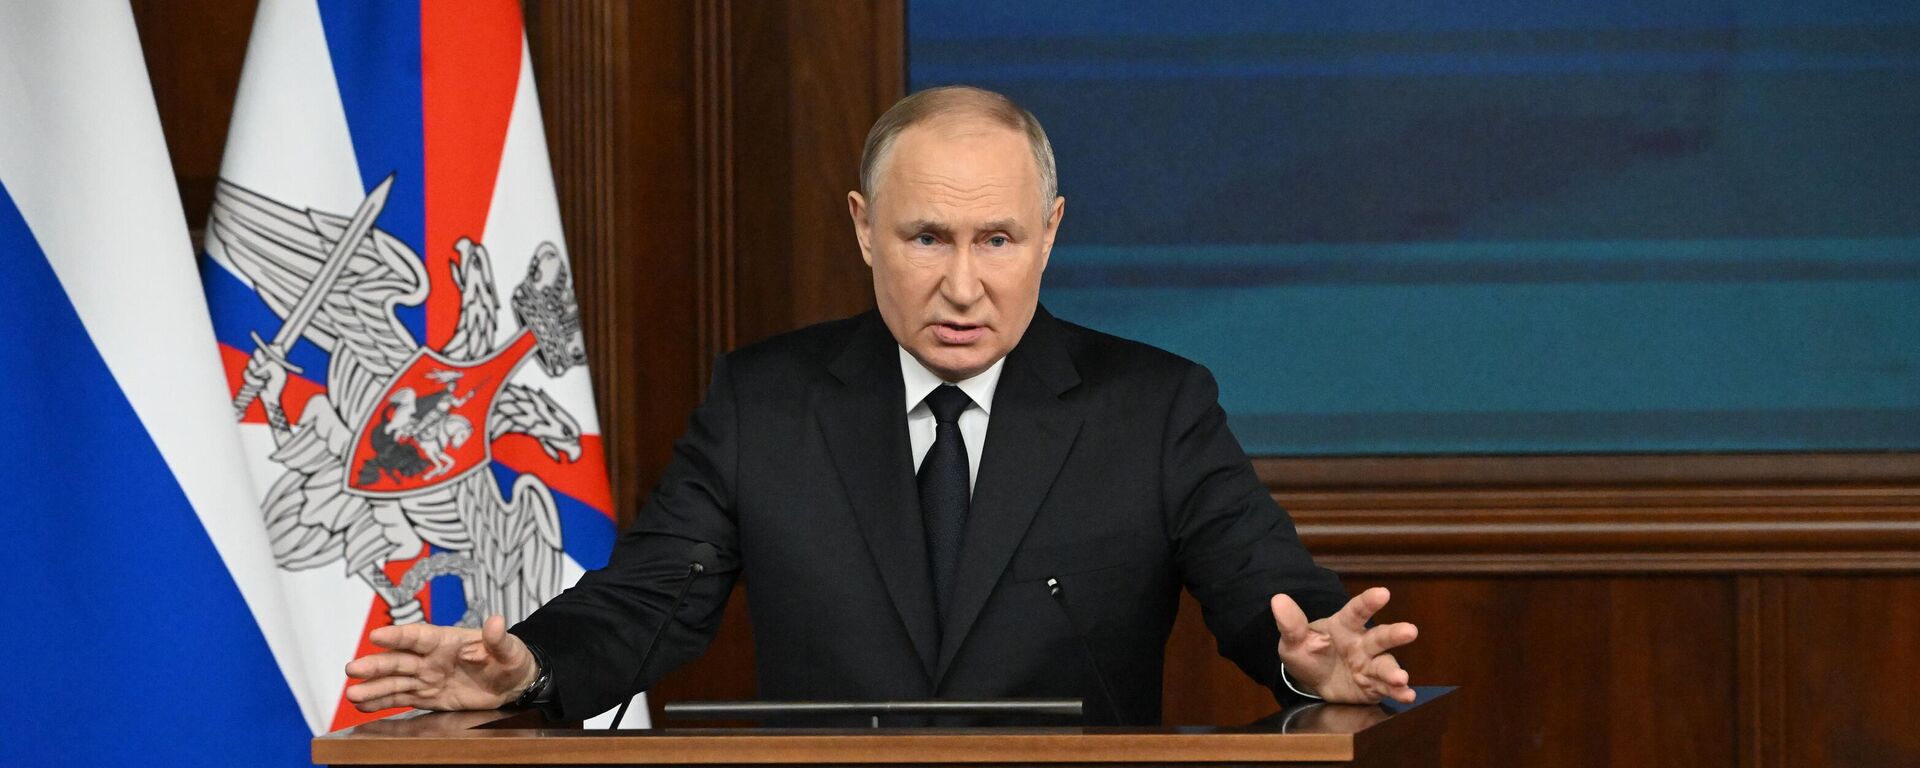 El presidente ruso, Vladímir Putin, al intervenir durante una reunión en el Ministerio de Defensa ruso el 19 de diciembre - Sputnik Mundo, 1920, 19.12.2023